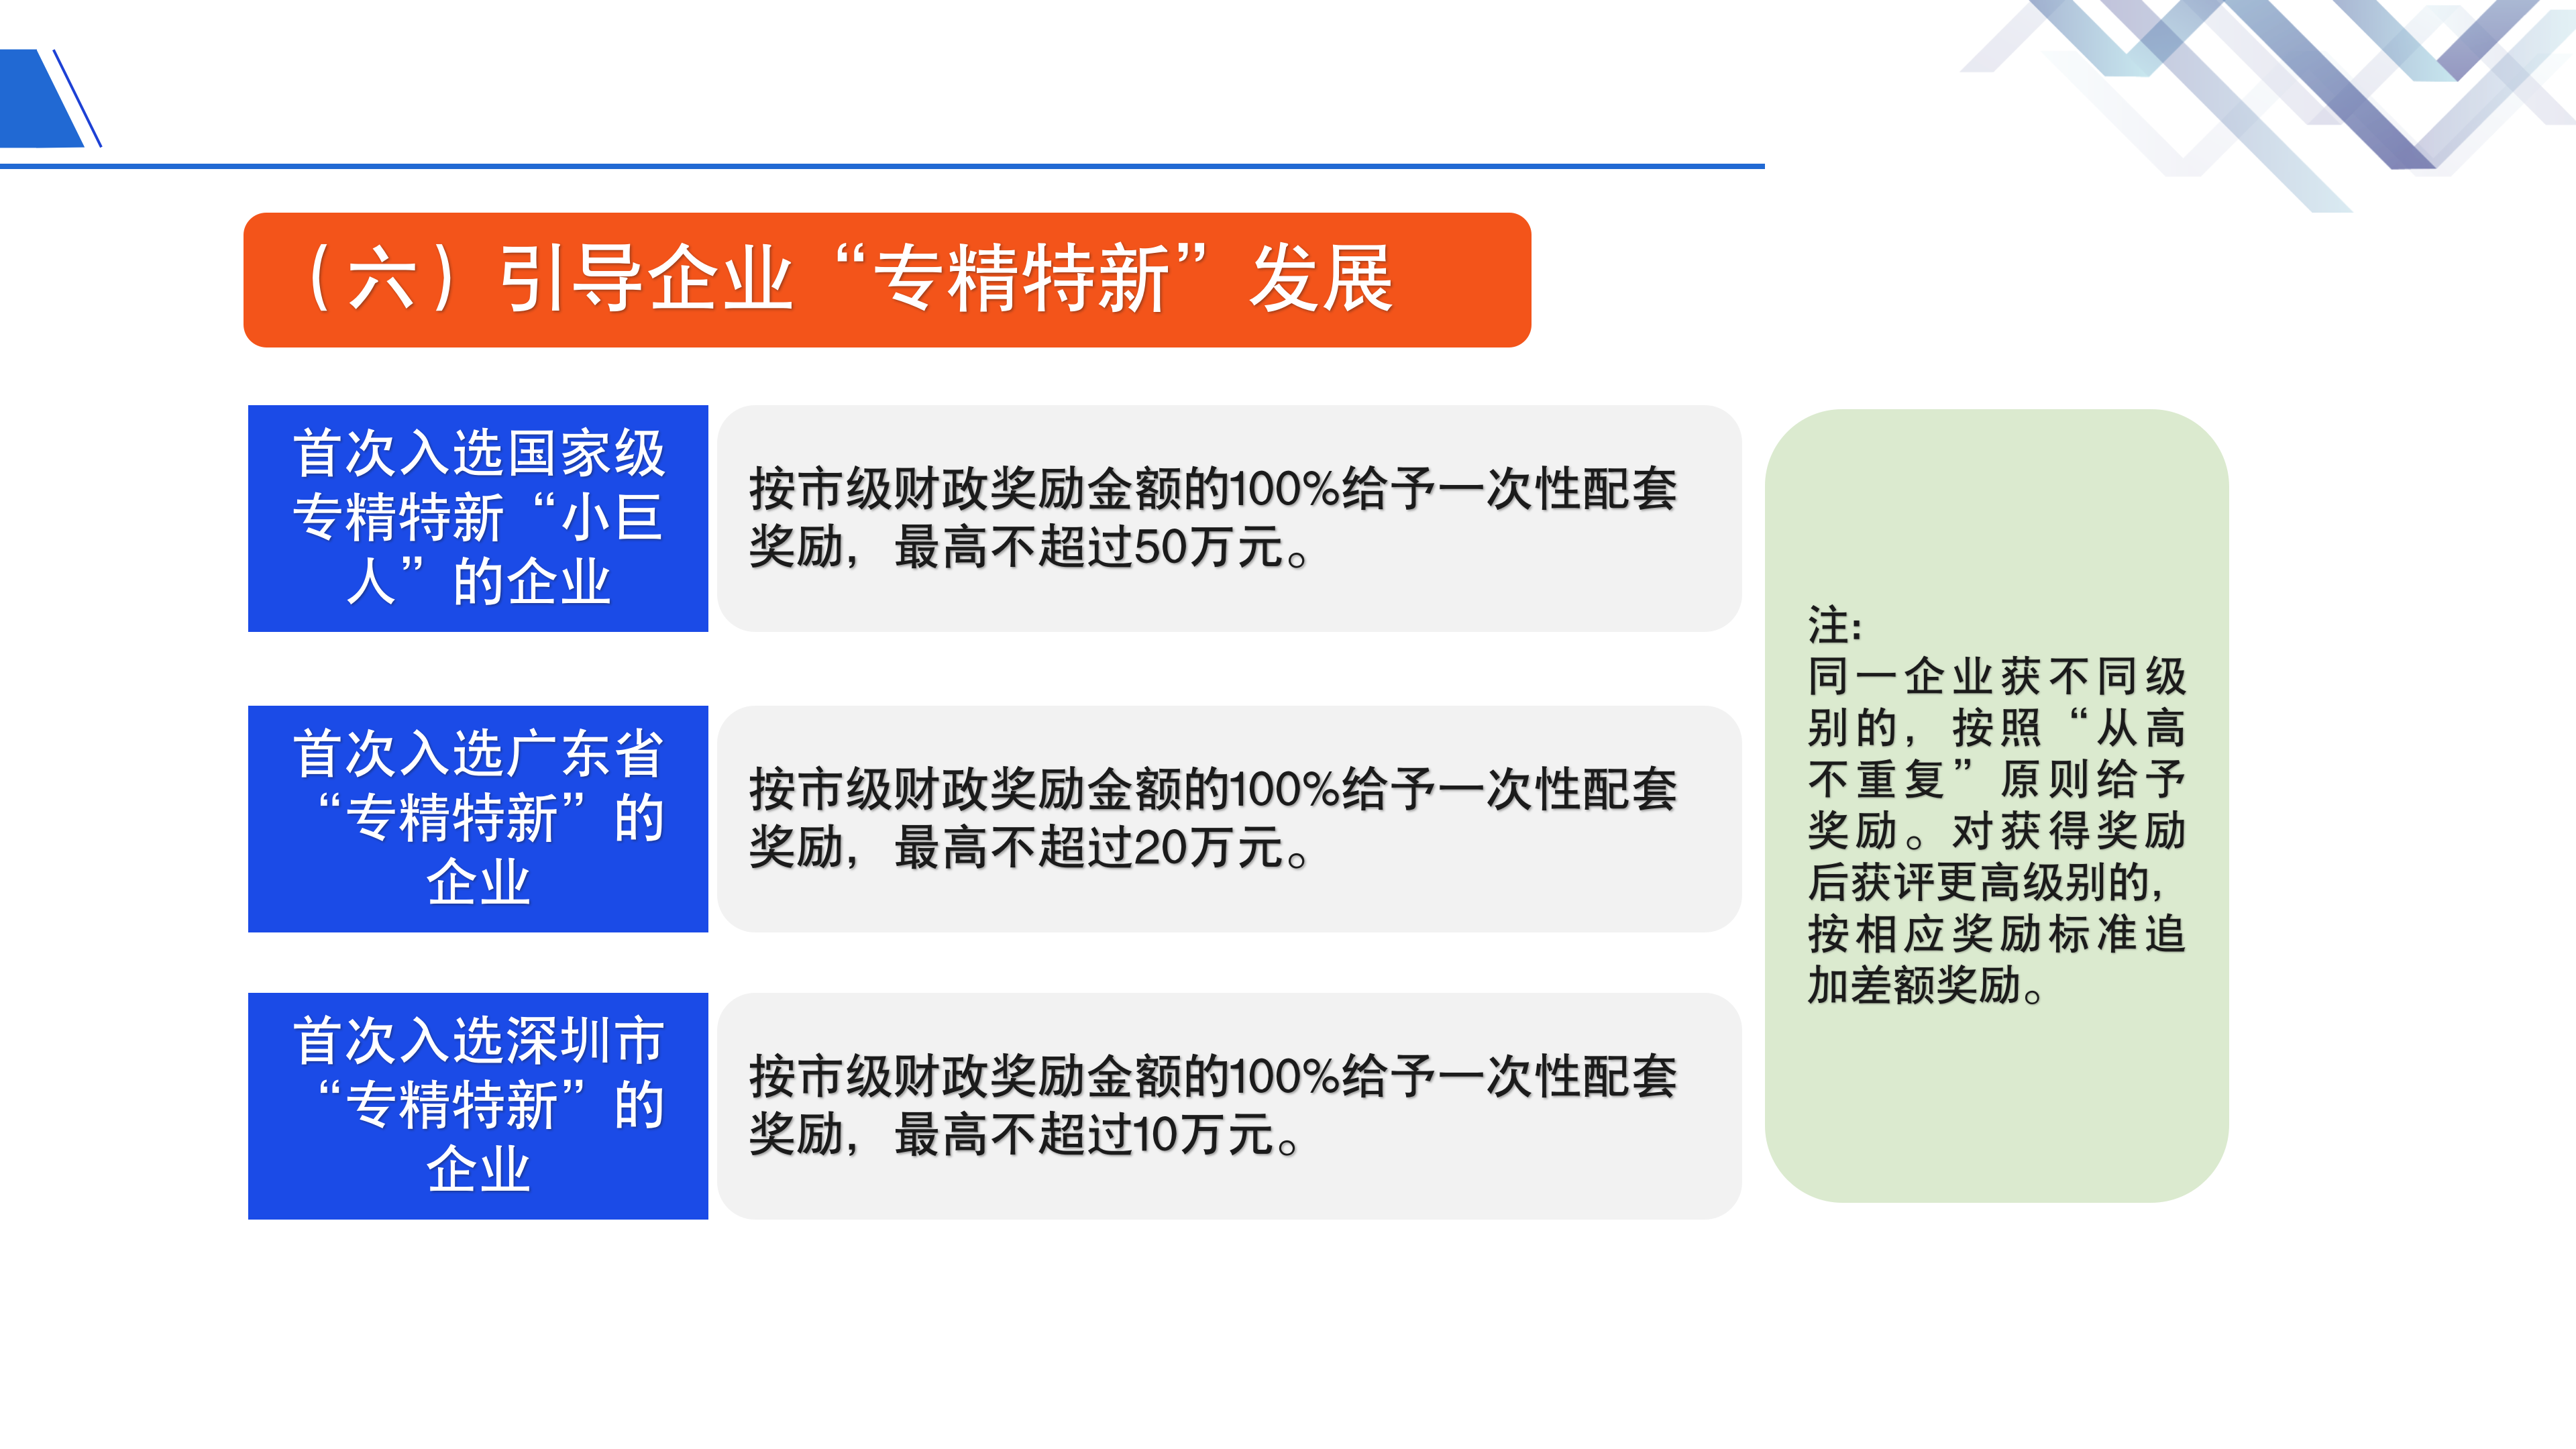 《深圳市大鹏新区关于促进制造业高质量发展的若干措施》政策解读_14.png